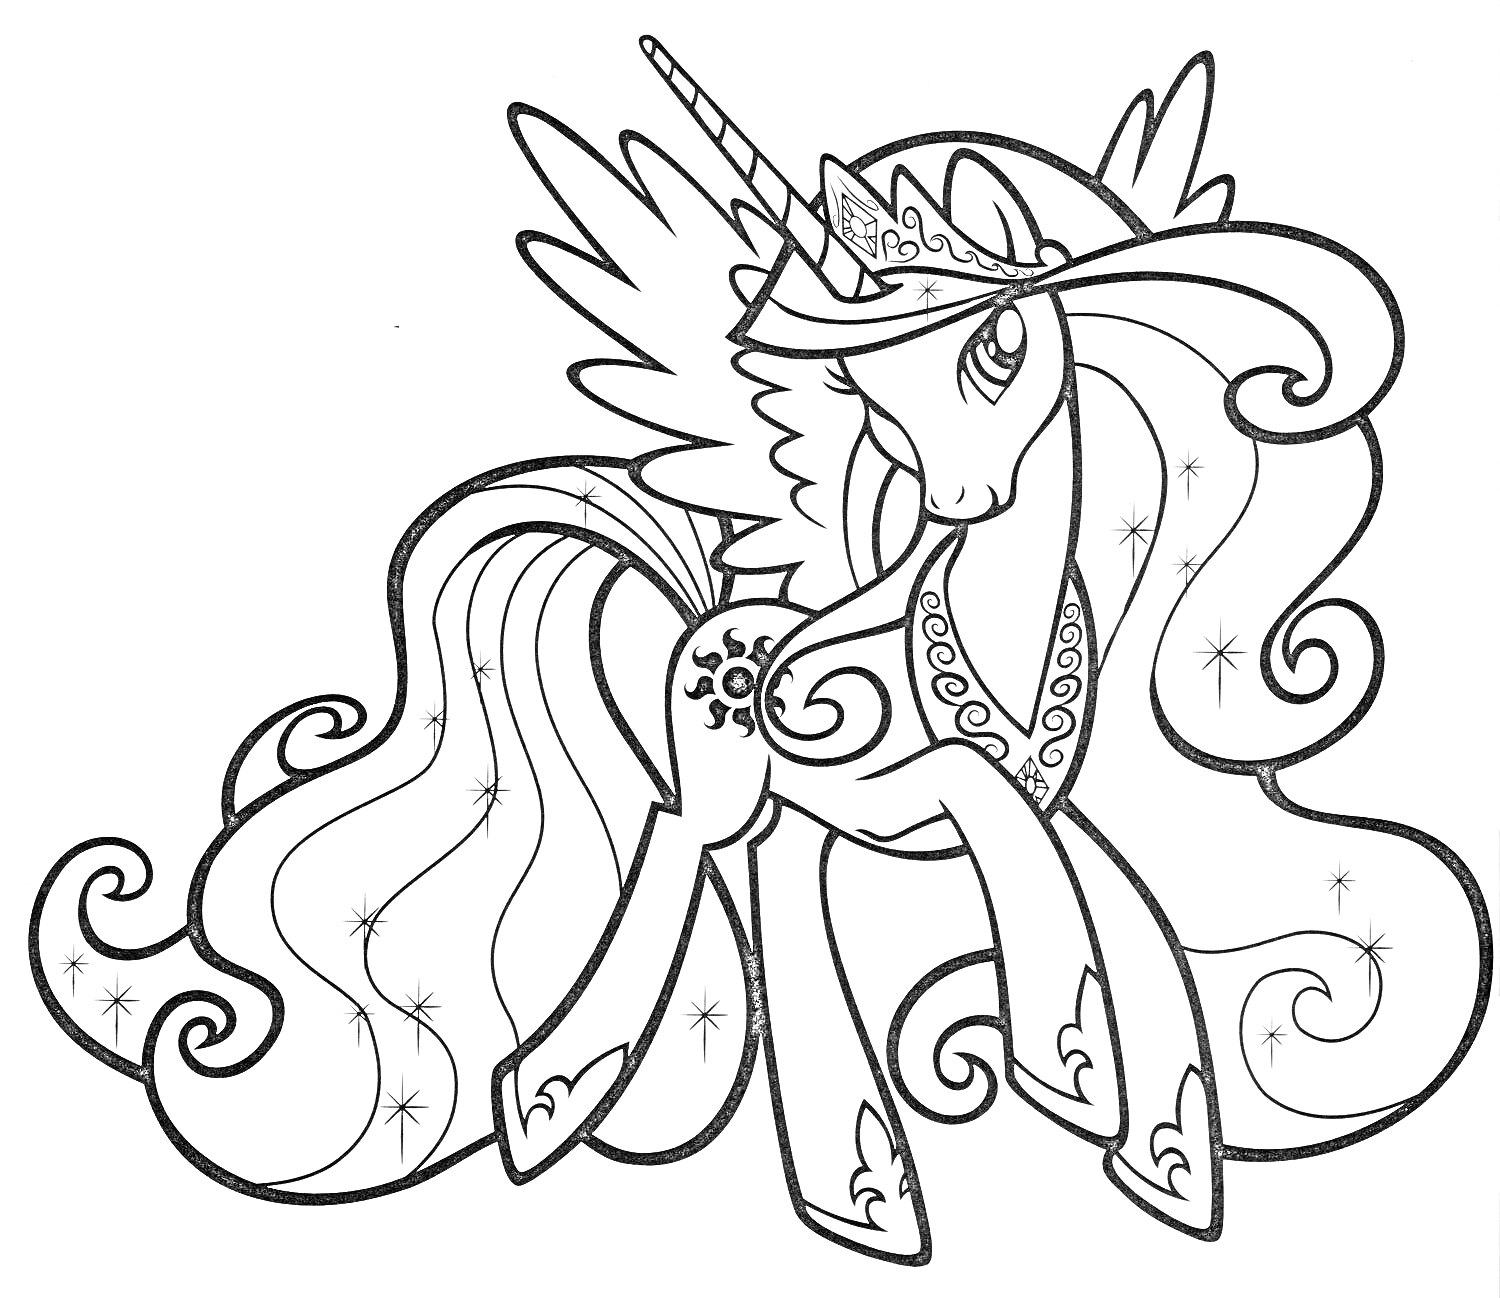 Раскраска Единорог с крыльями, длинной гривой и хвостом, с узорами в виде сердец и цветов